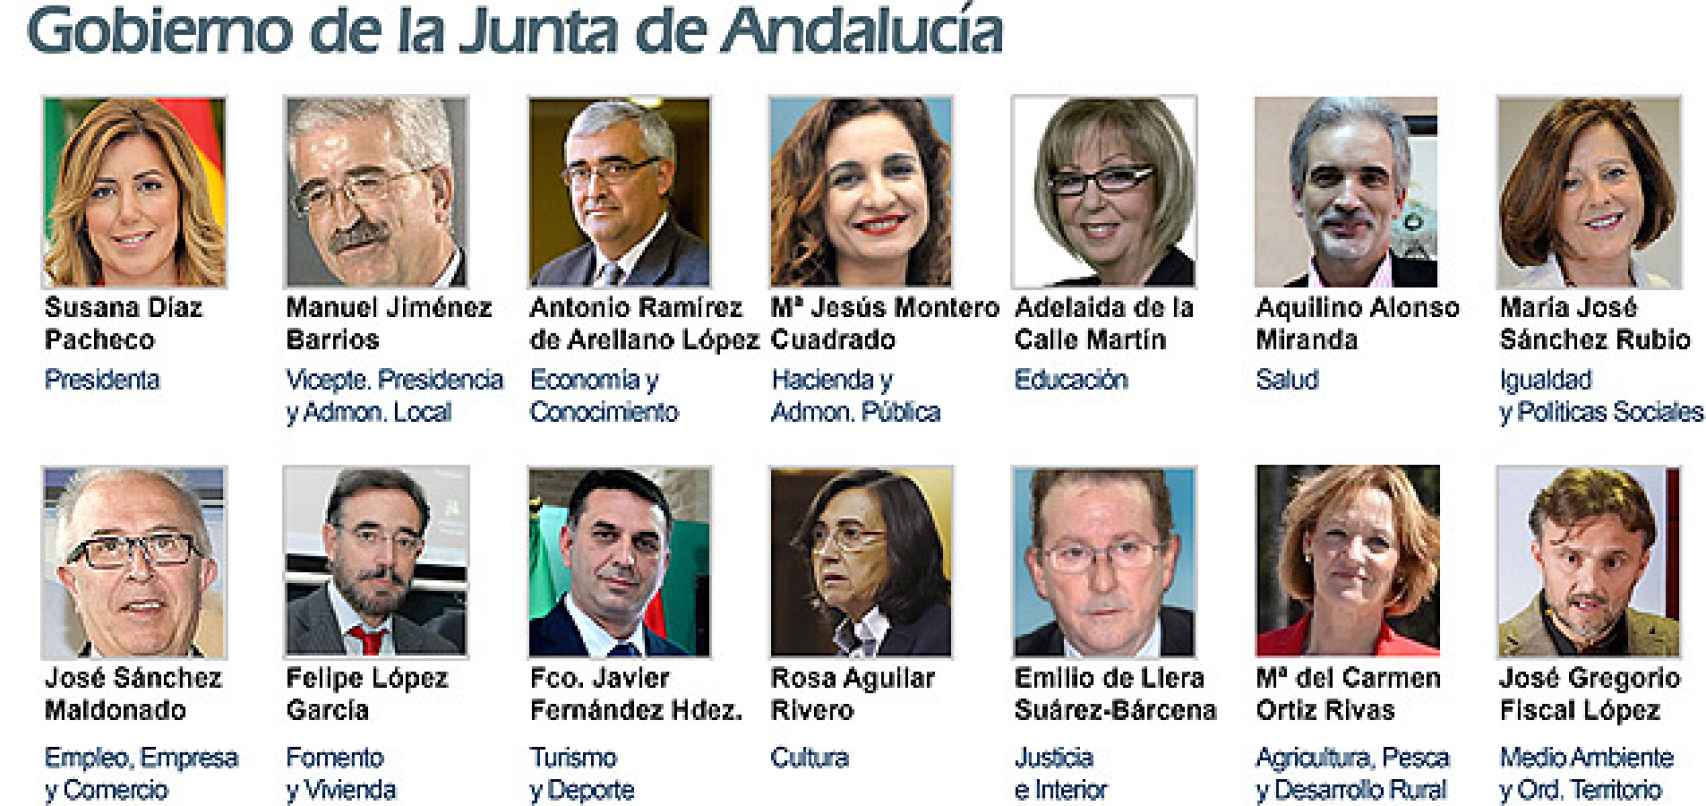 Este era el gobierno que Díaz constituyó en 2015.